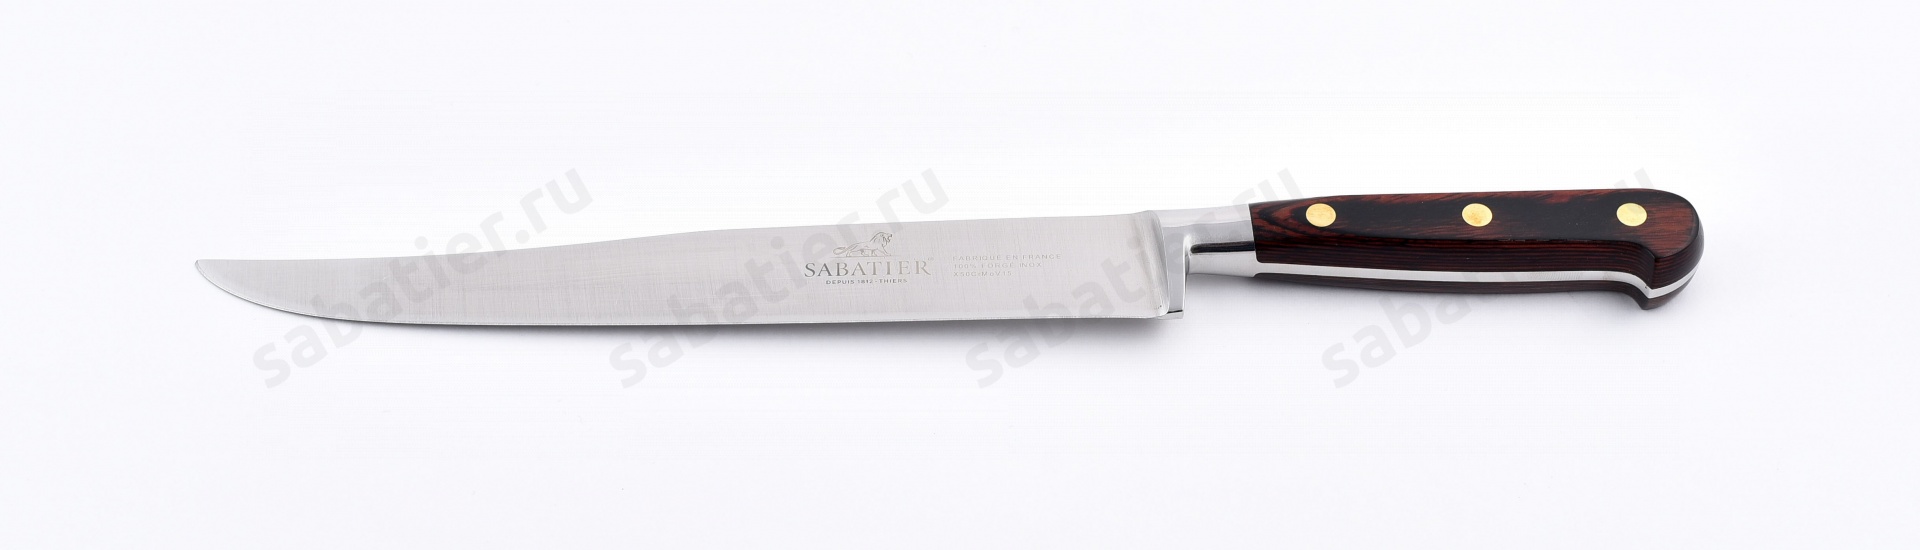 Нож для нарезки ЯТАГАН Saveur 20 см